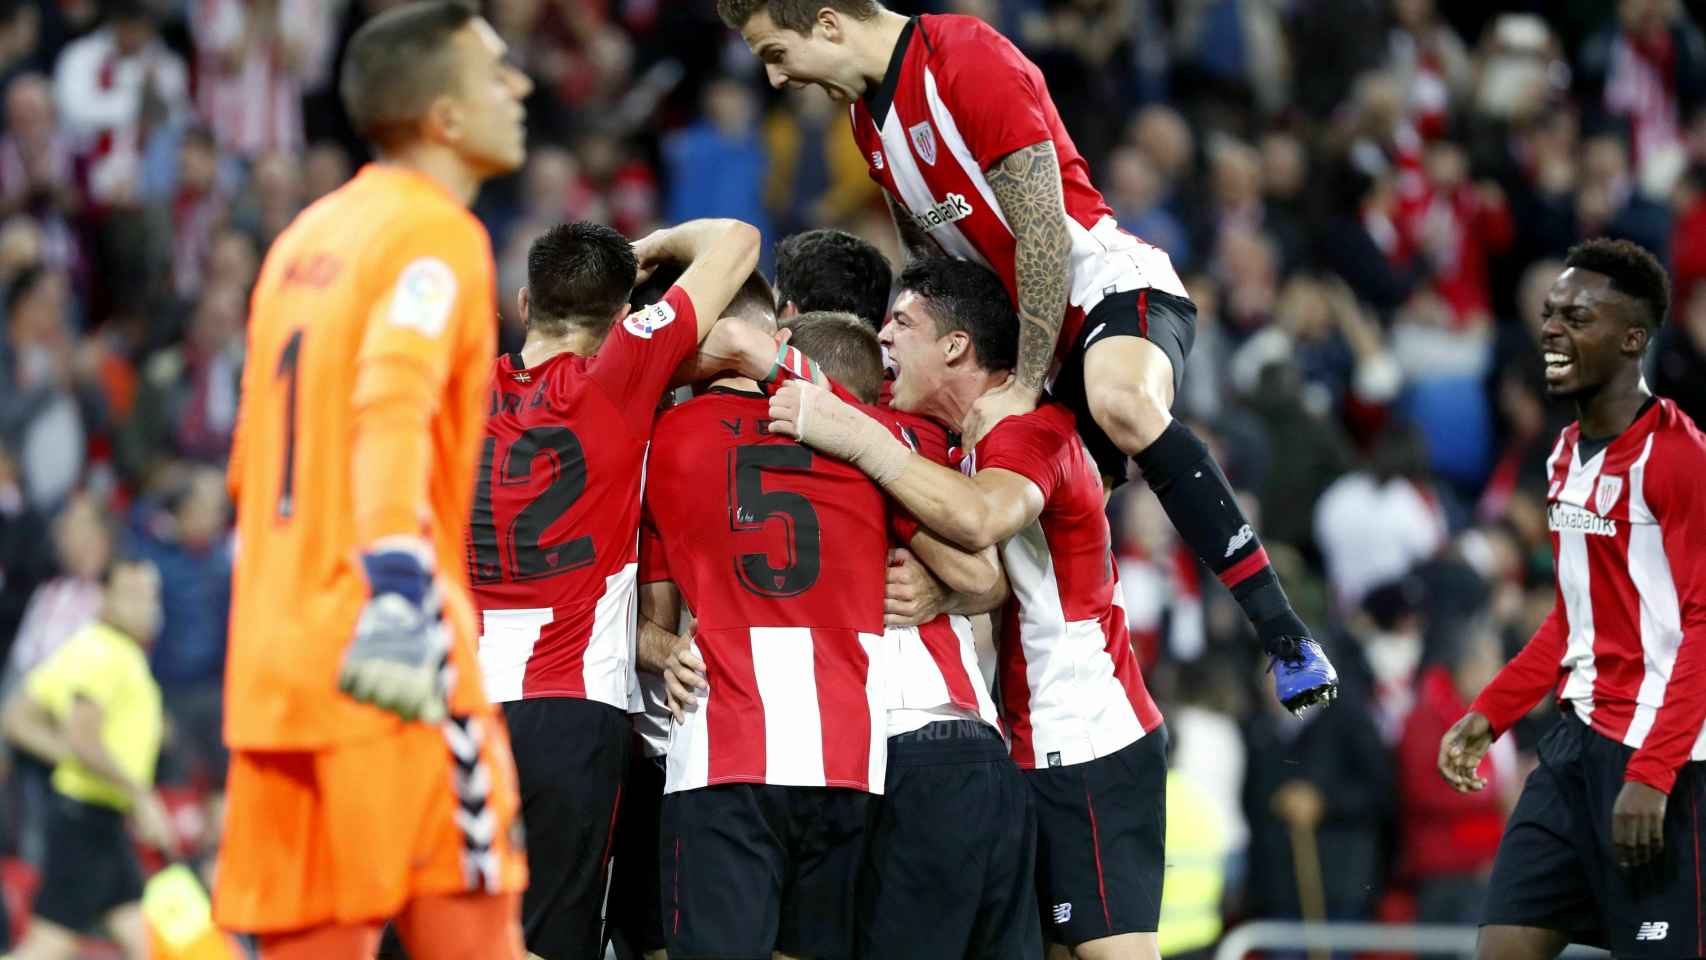 El Athletic celebra el gol de Aduriz conseguido ante el Valladolid